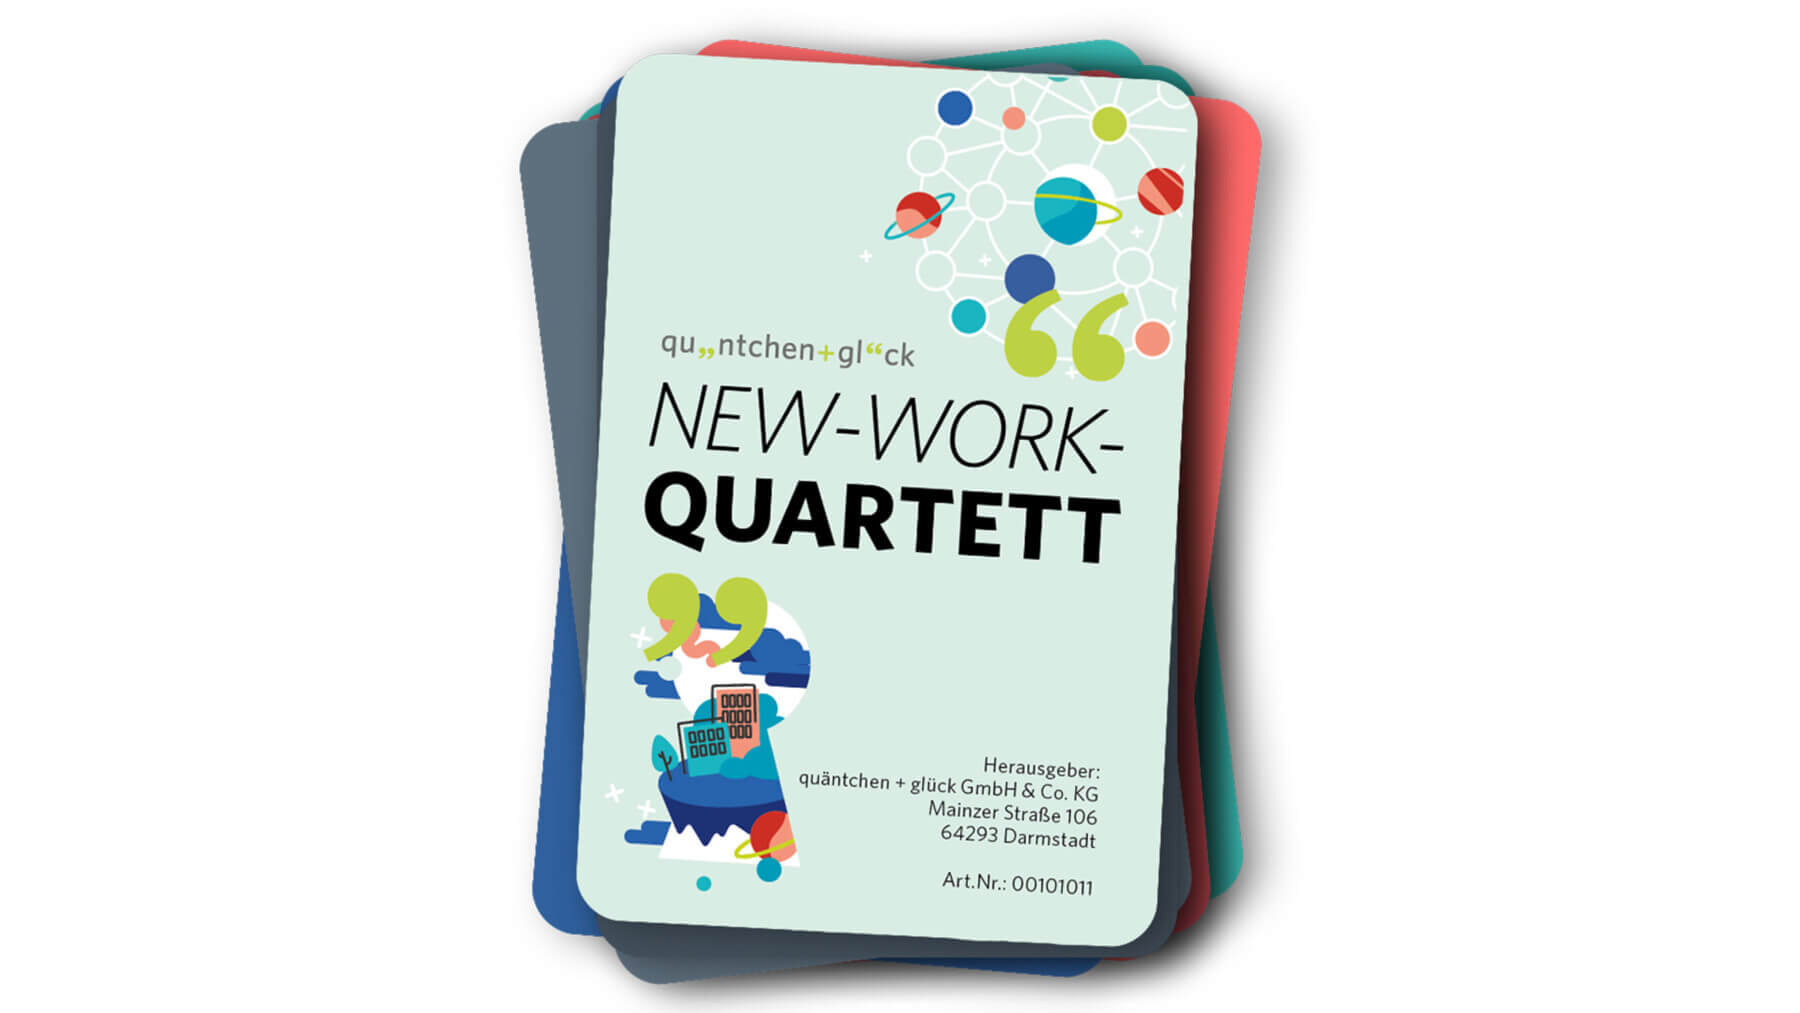 Titelbild von der neuen Auflage des New-Work-Quartetts